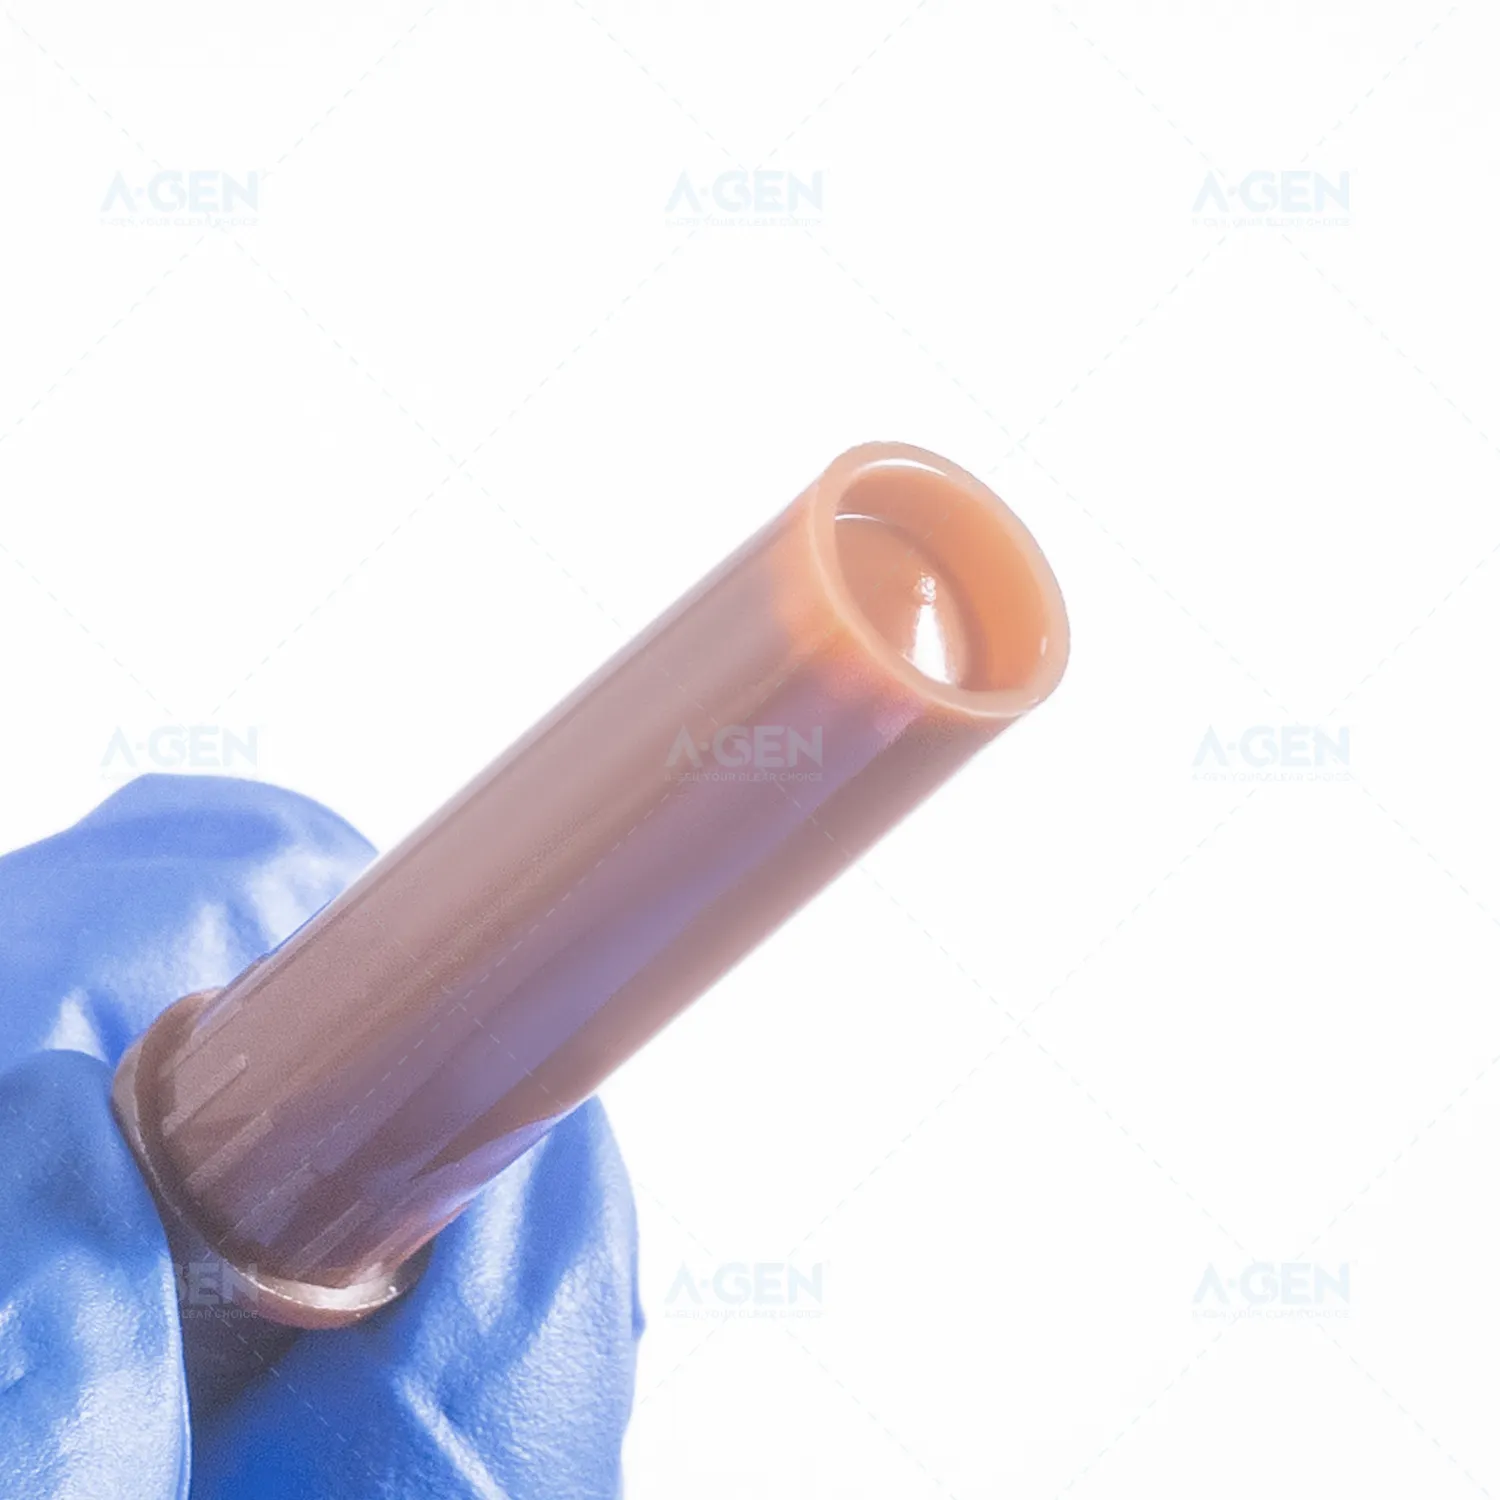 Tube de consommables de laboratoire PP stériles de qualité médicale 0.5ml 1.5ml 2ml Microtube autoportant Cryovial tubes 2ml avec bouchon à vis